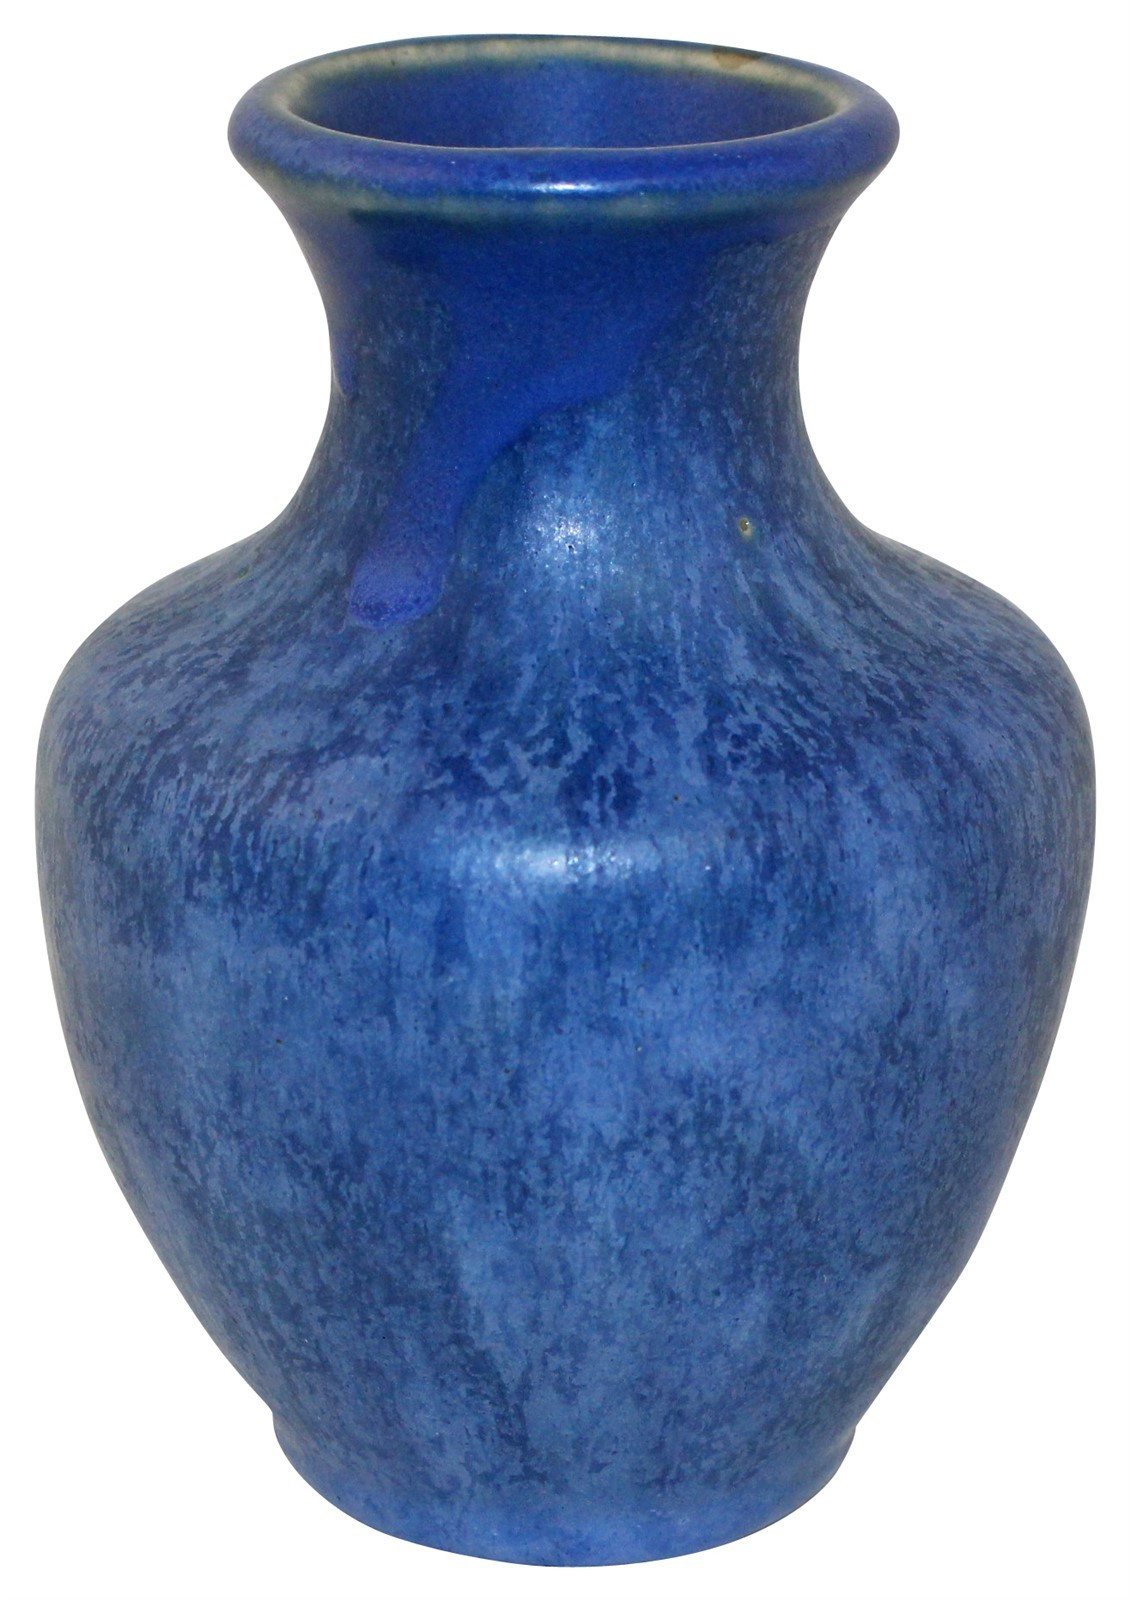 10 Lovely Moorcroft Sunflower Vase 2024 free download moorcroft sunflower vase of just art pottery from just art pottery inside camark pottery blue and white stipple vase 118